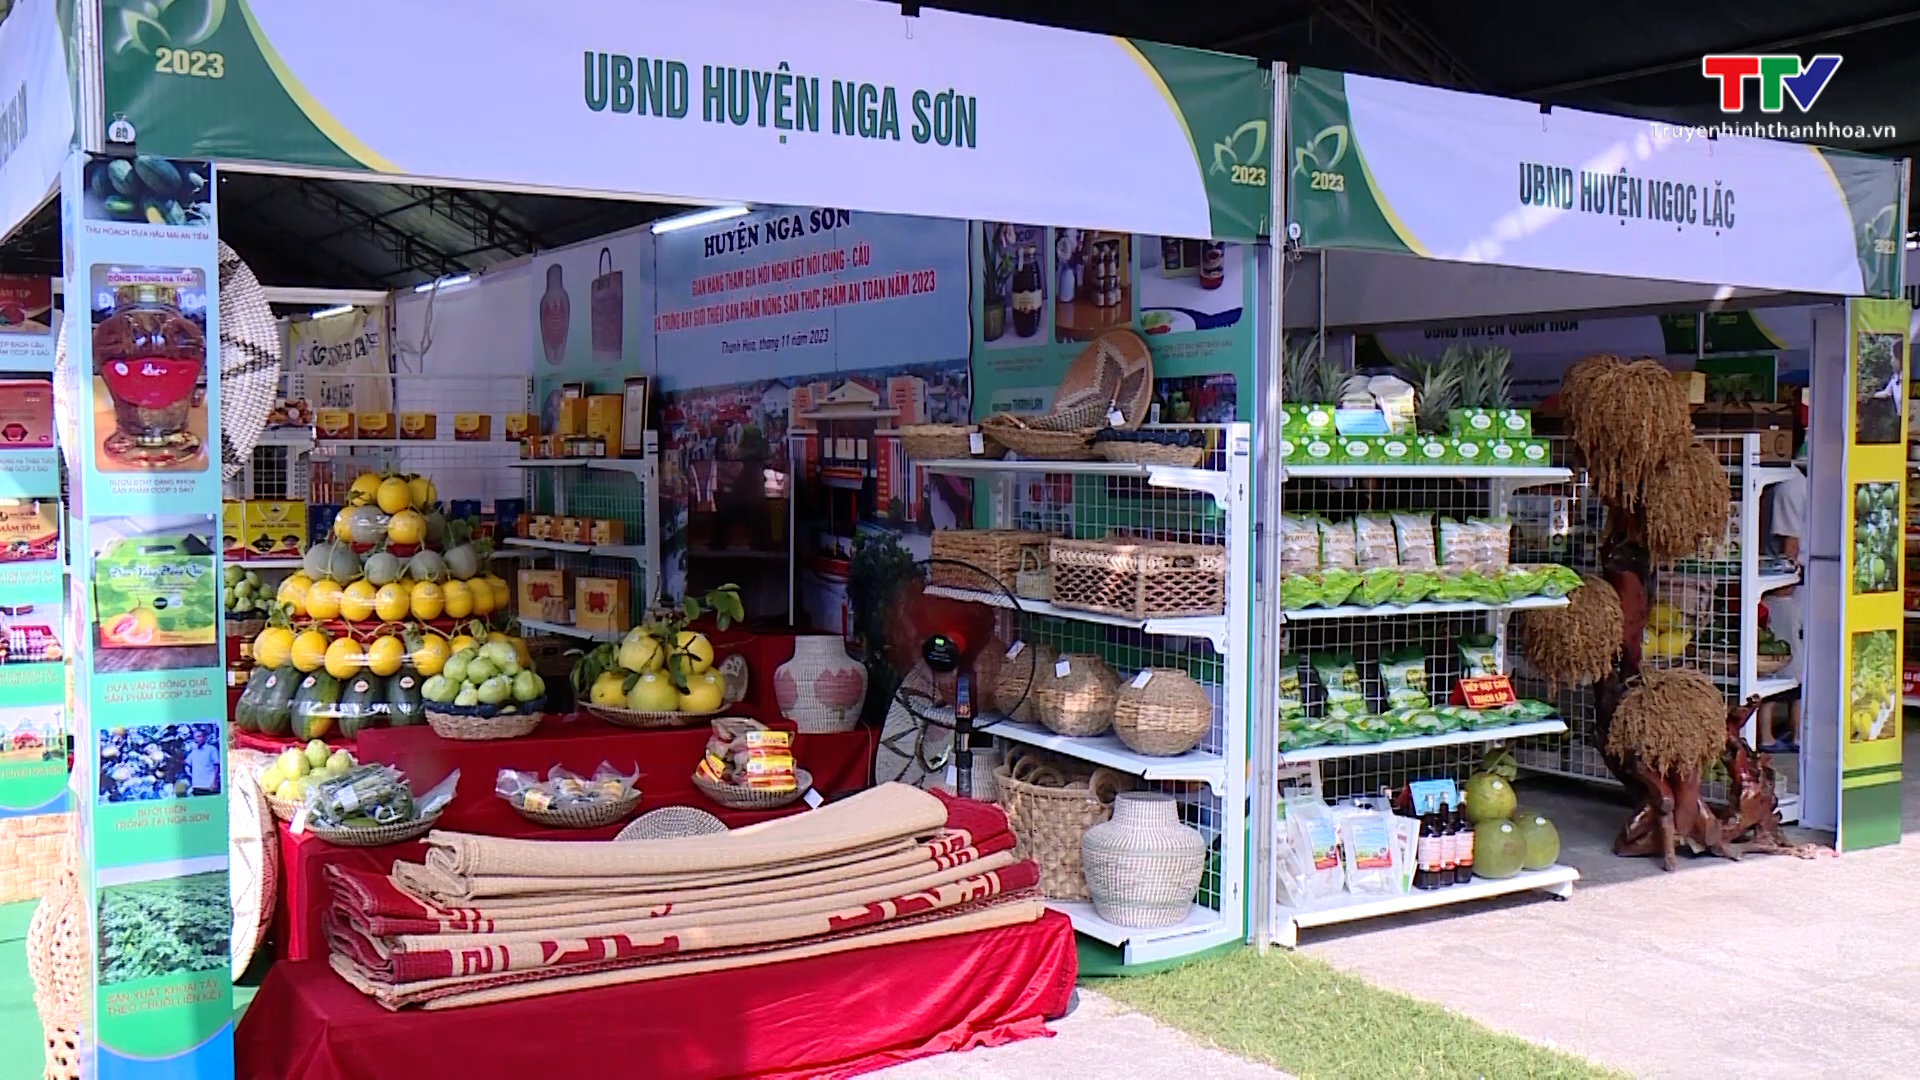 Cơ hội đưa nông sản, thực phẩm an toàn tỉnh Thanh Hoá ra thị trường lớn- Ảnh 1.